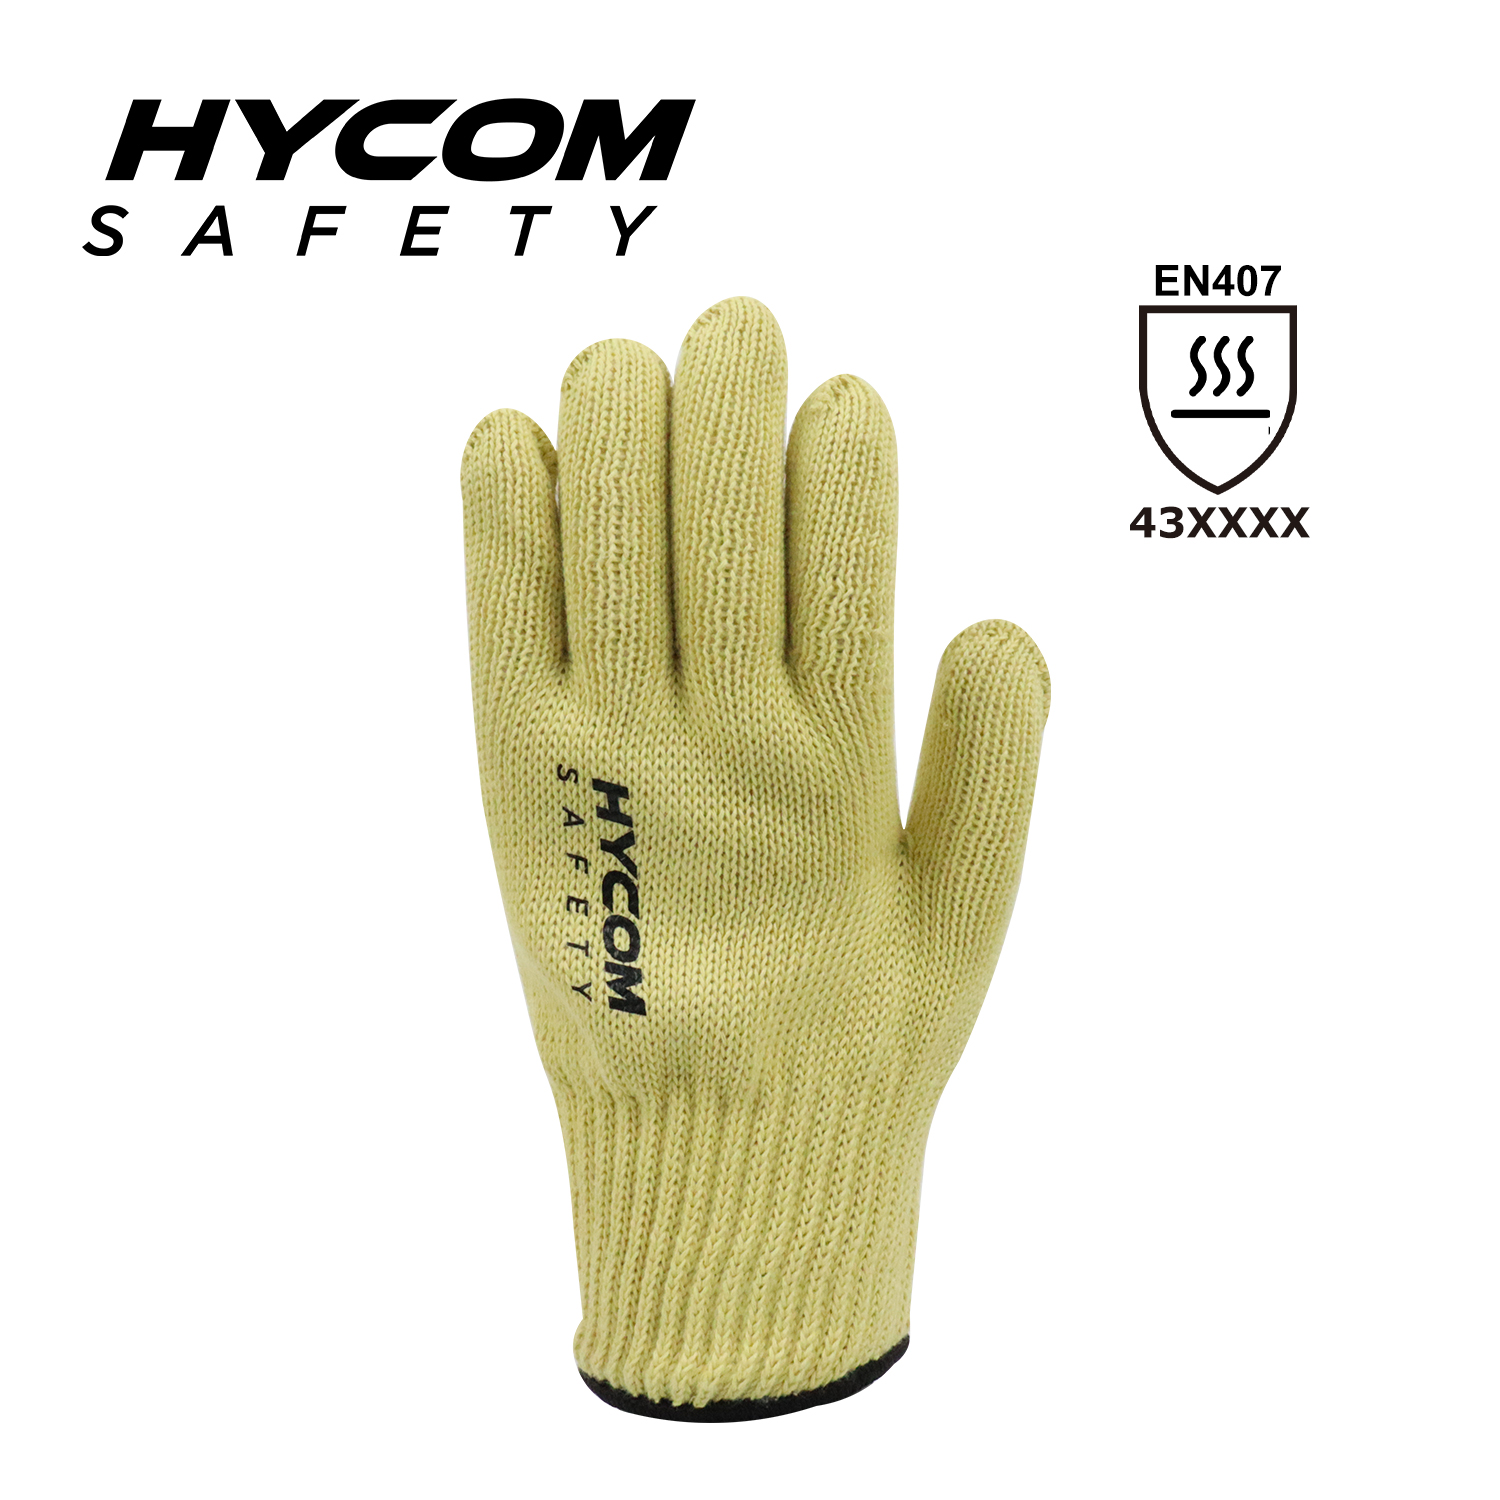 HYCOM 7G zweilagiger Aramid-Handschuh mit hoher Kontakttemperatur von 350°C/650F